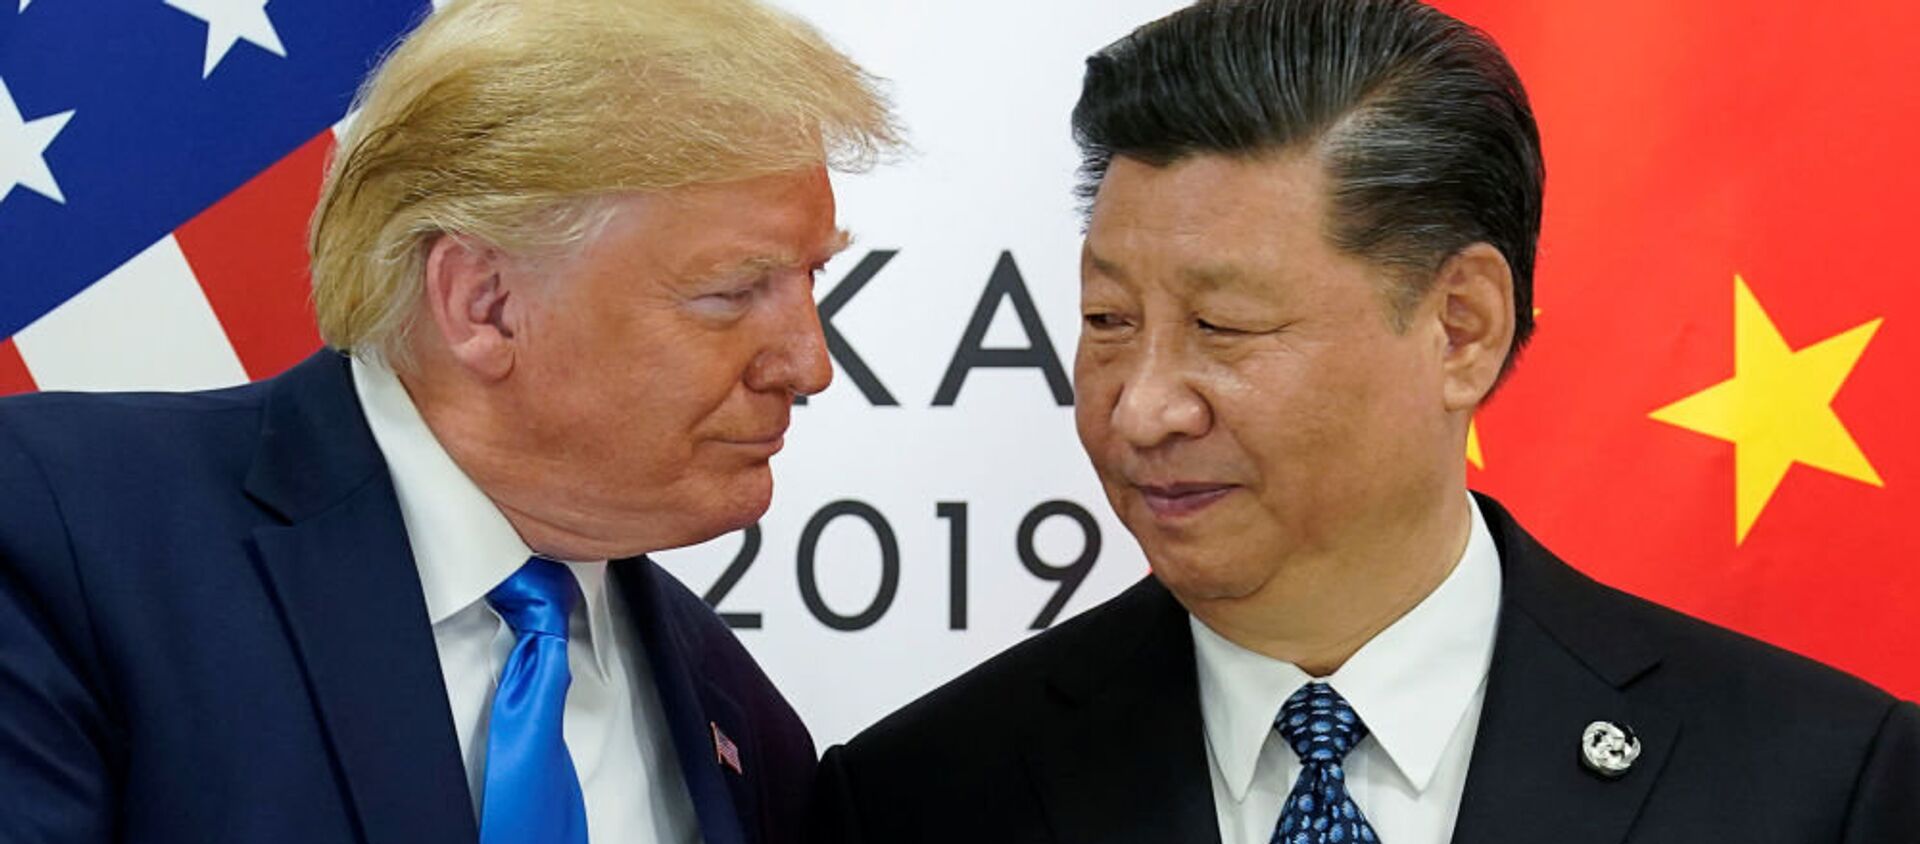 Trump gặp ông Tập tại hội nghị thượng đỉnh các nhà lãnh đạo G20 ở Osaka, Nhật Bản - Sputnik Việt Nam, 1920, 26.11.2020